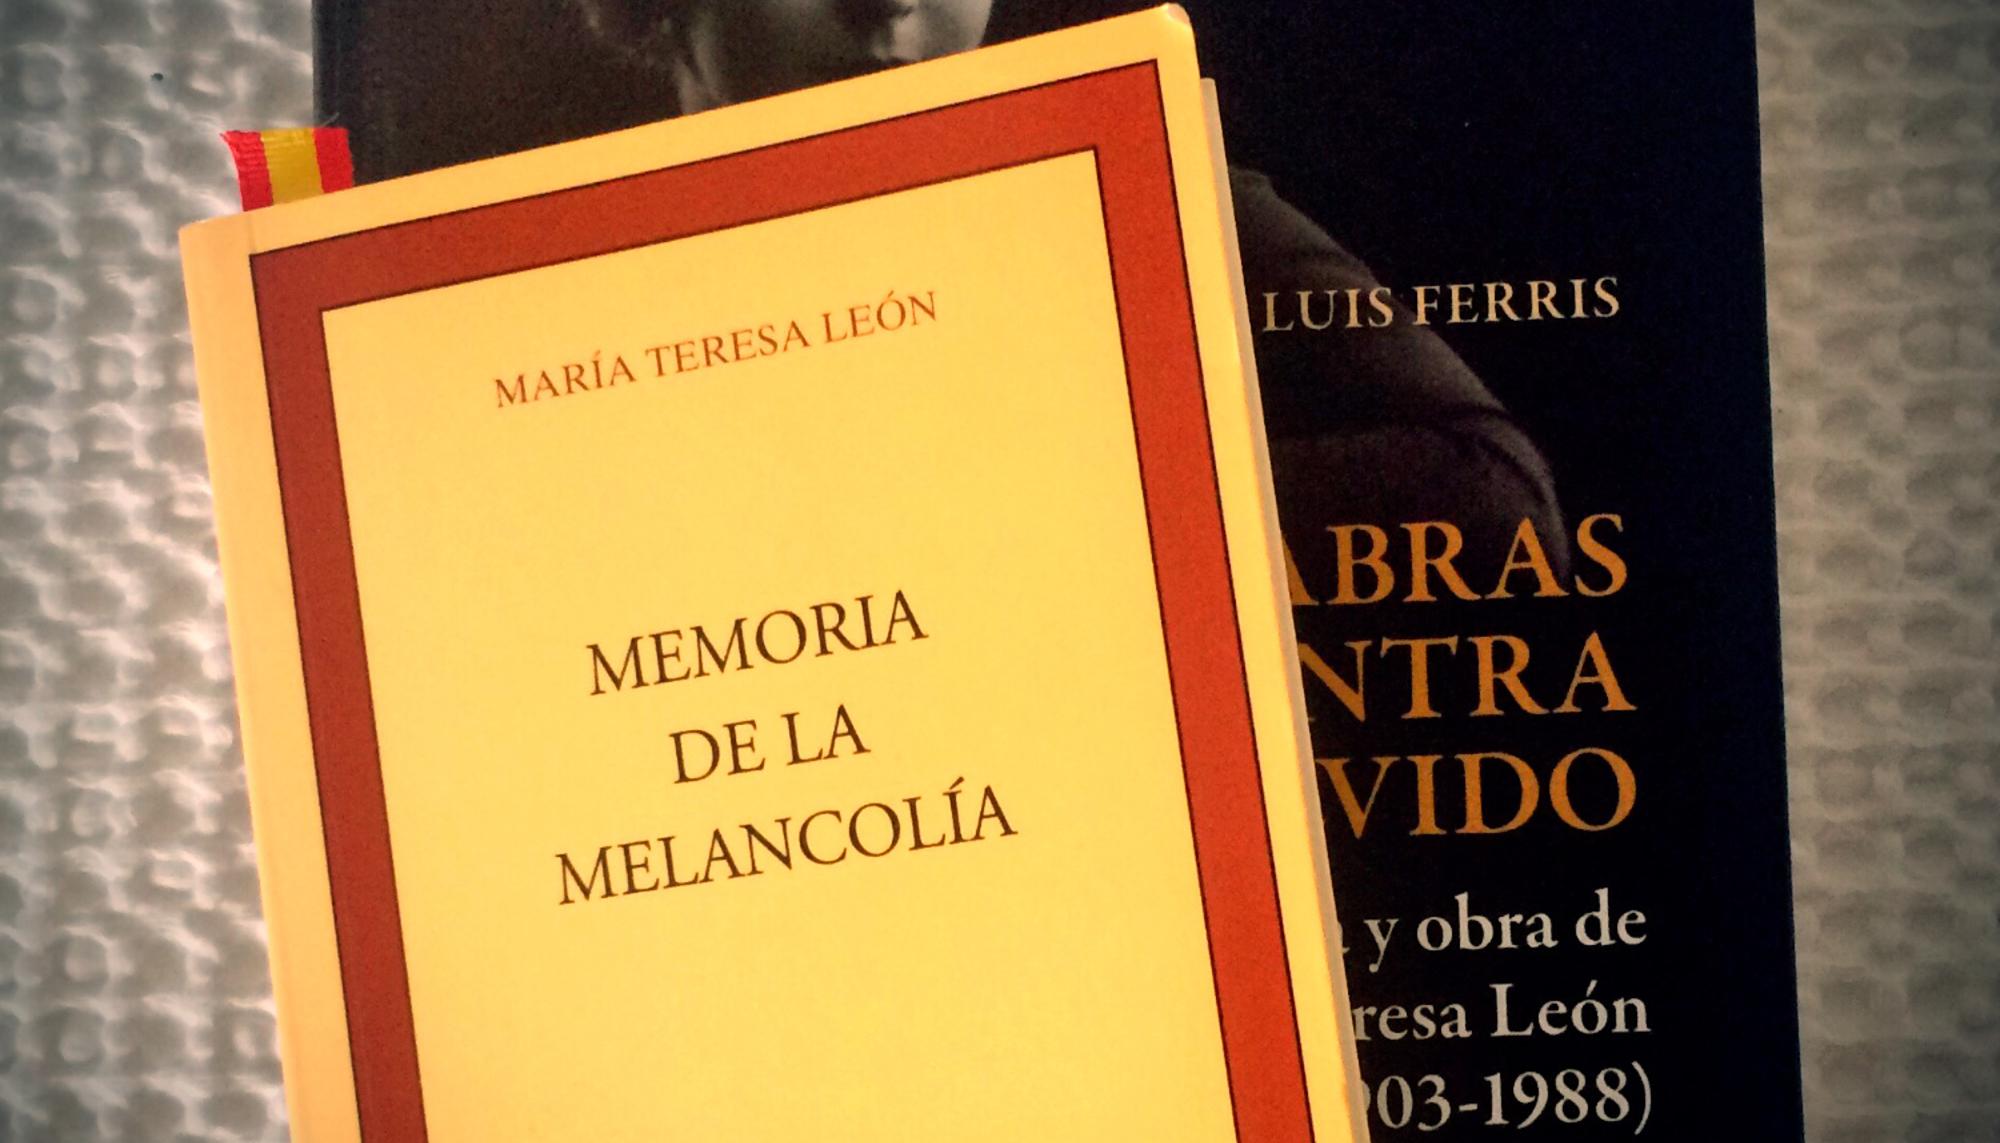 María Teresa León - Memoria de la melancolía 